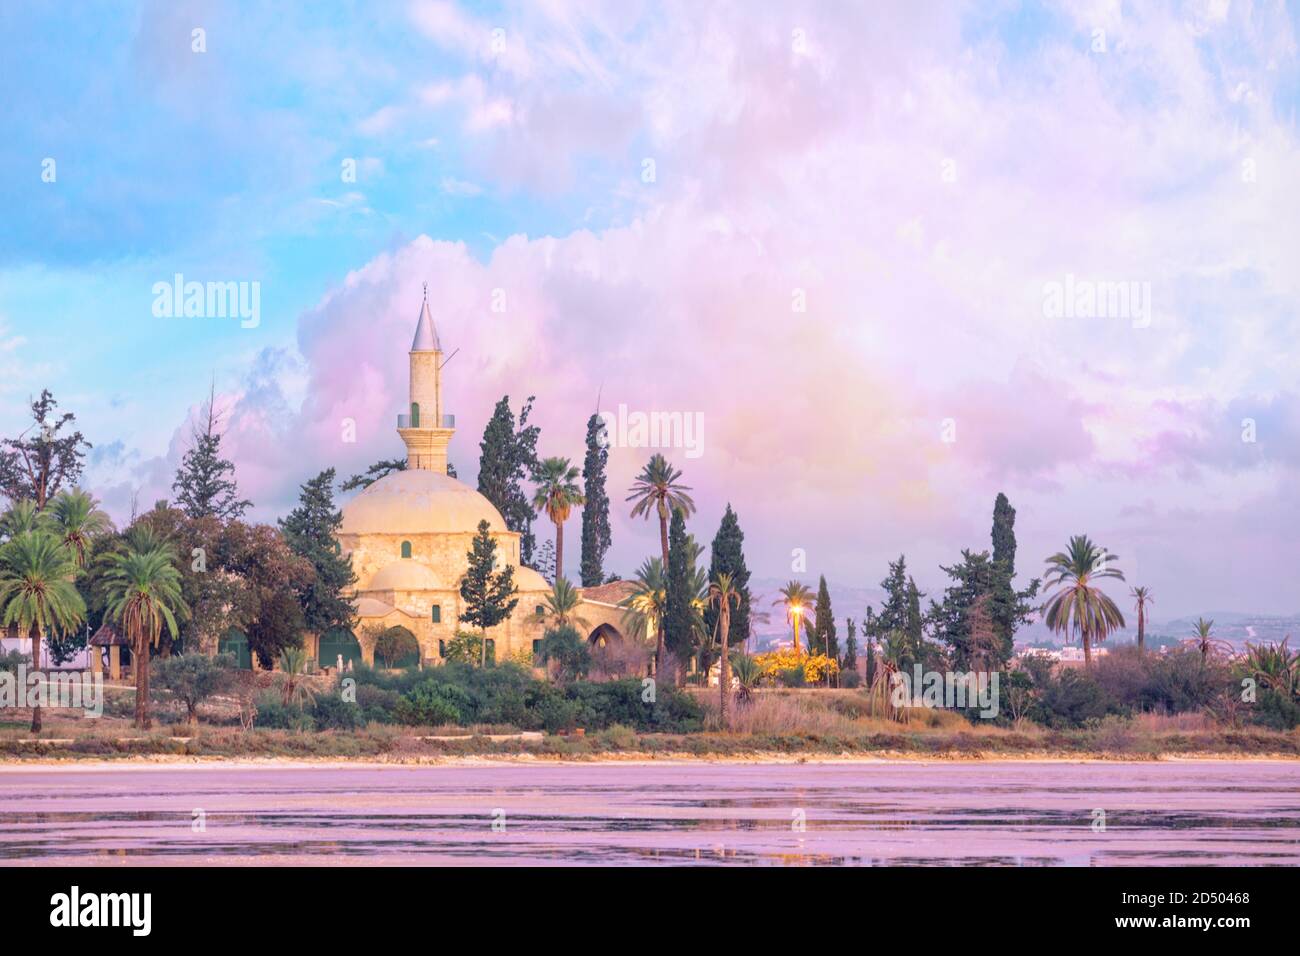 Hala Sultan Tekke Moschee am Ufer des Salzsees in Larnaca, Zypern Stockfoto